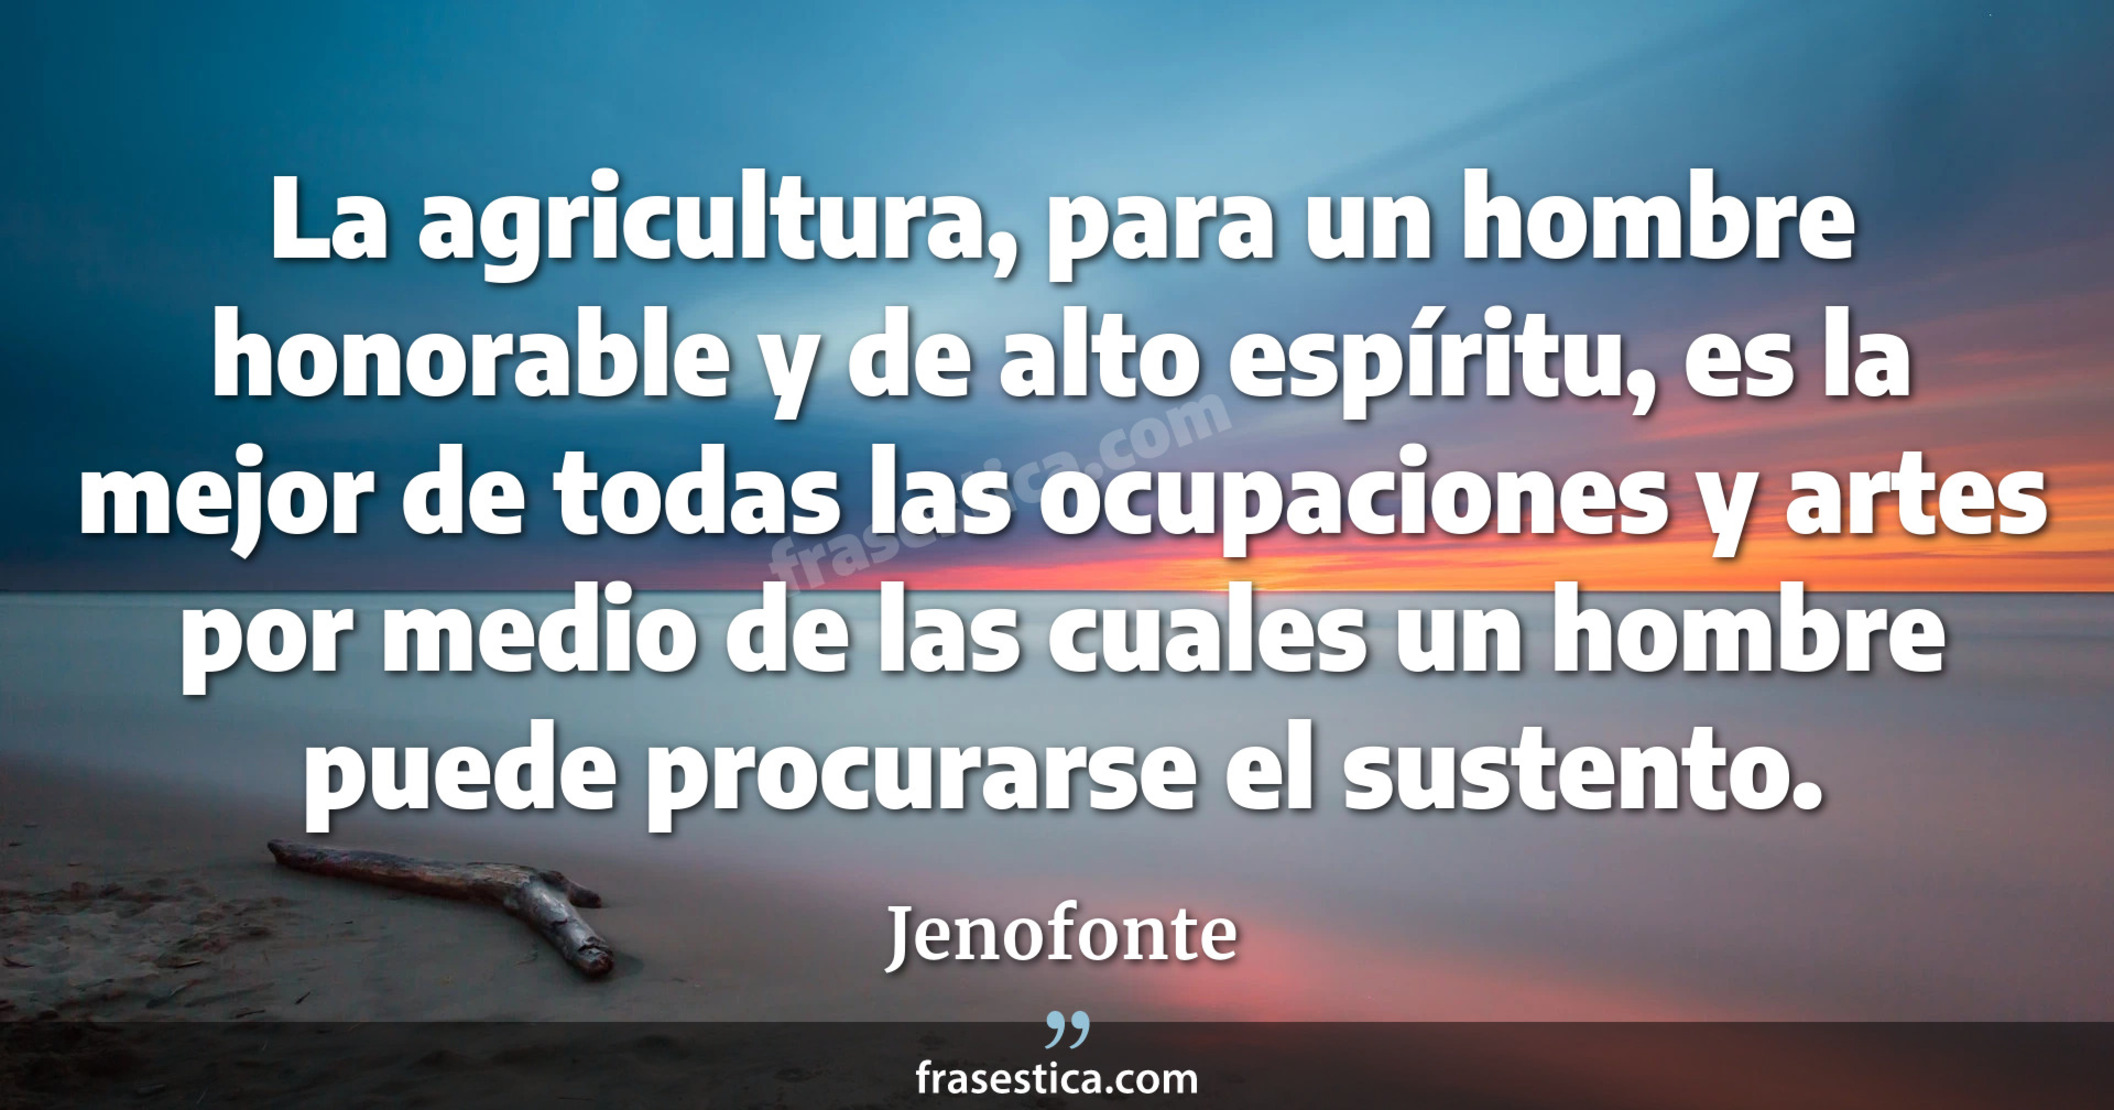 La agricultura, para un hombre honorable y de alto espíritu, es la mejor de todas las ocupaciones y artes por medio de las cuales un hombre puede procurarse el sustento. - Jenofonte